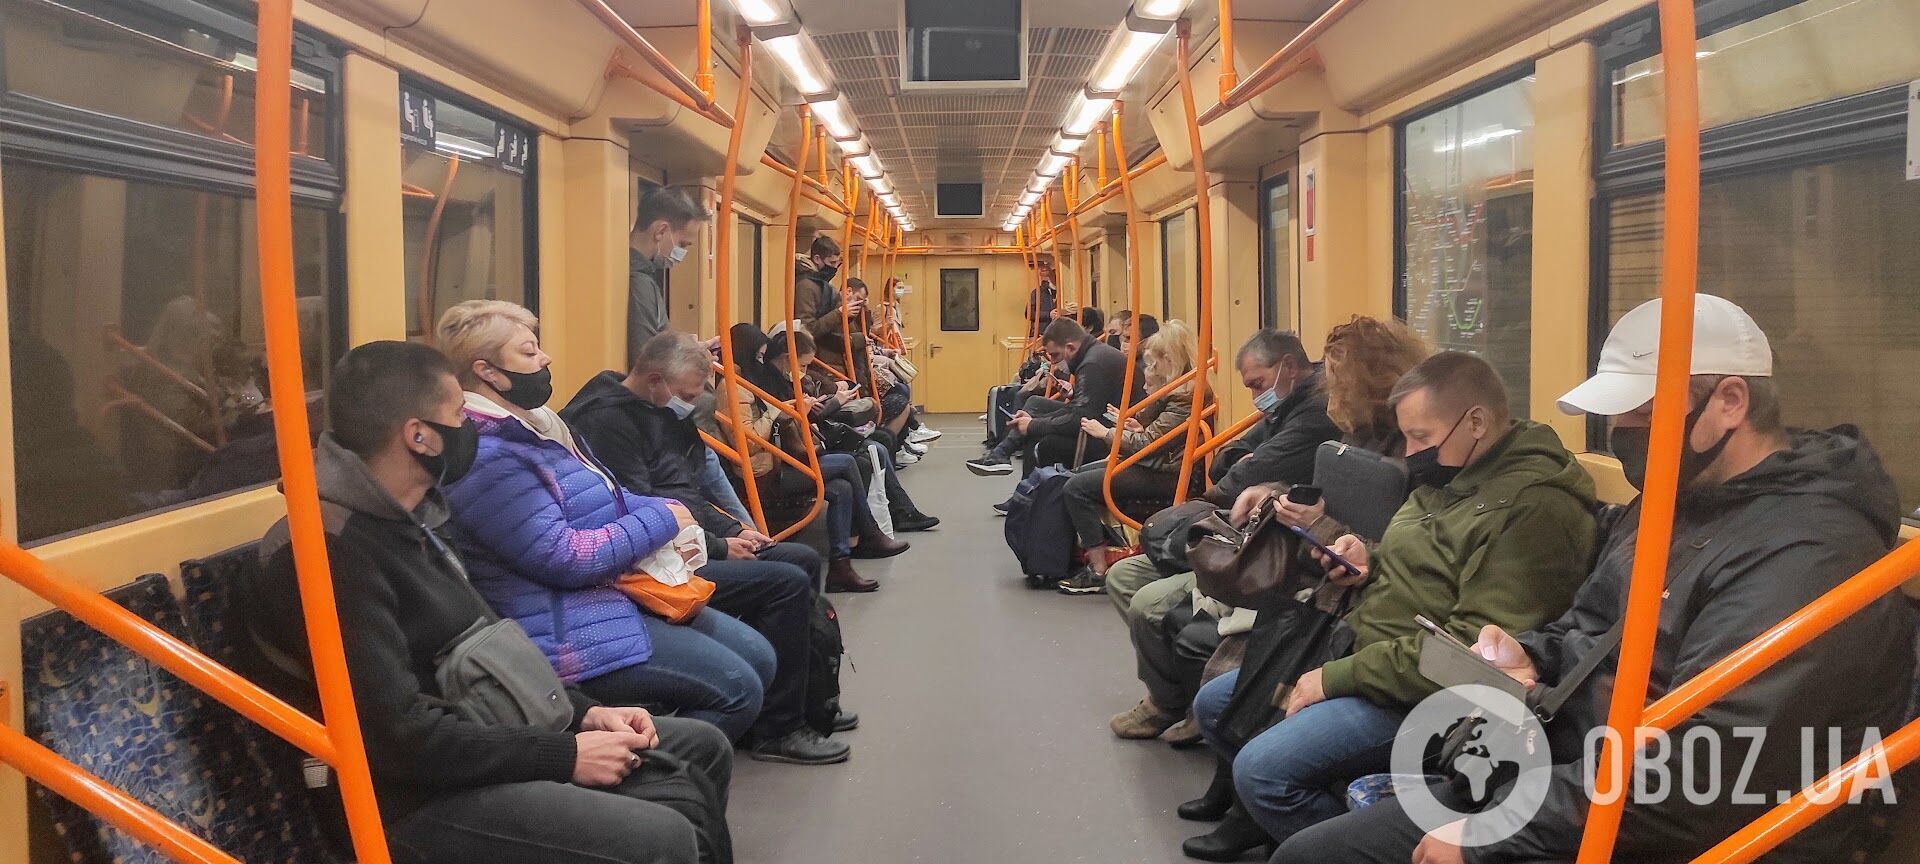 В метро каждый десятый пассажир без защитной маски.